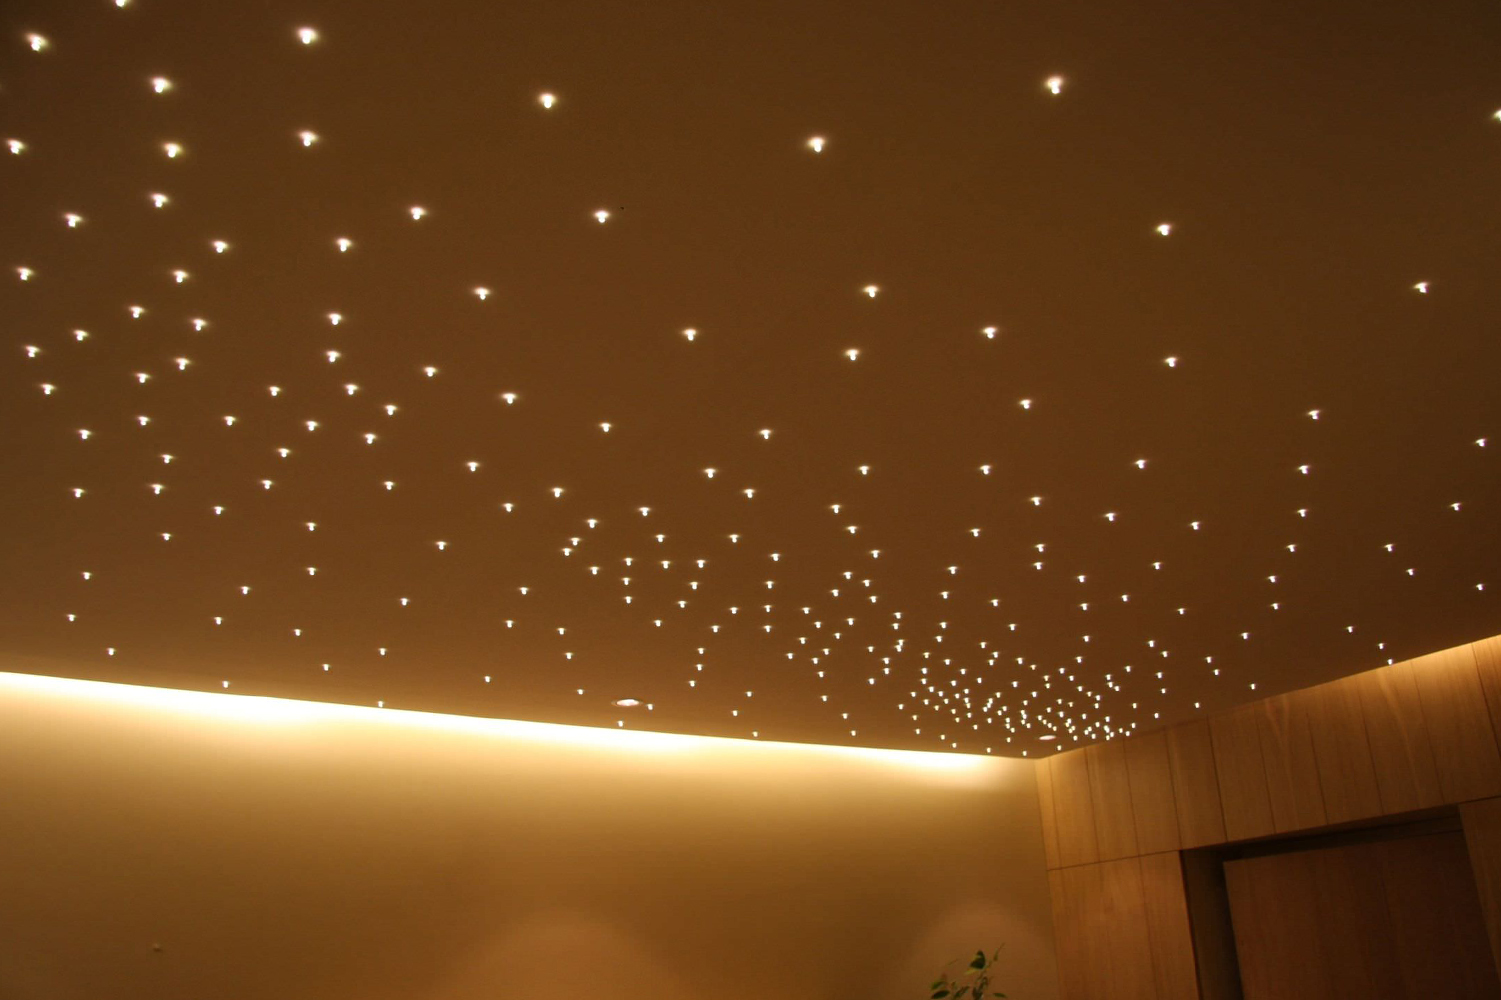 Идеи и варианты освещения для натяжных потолков для разных комнат